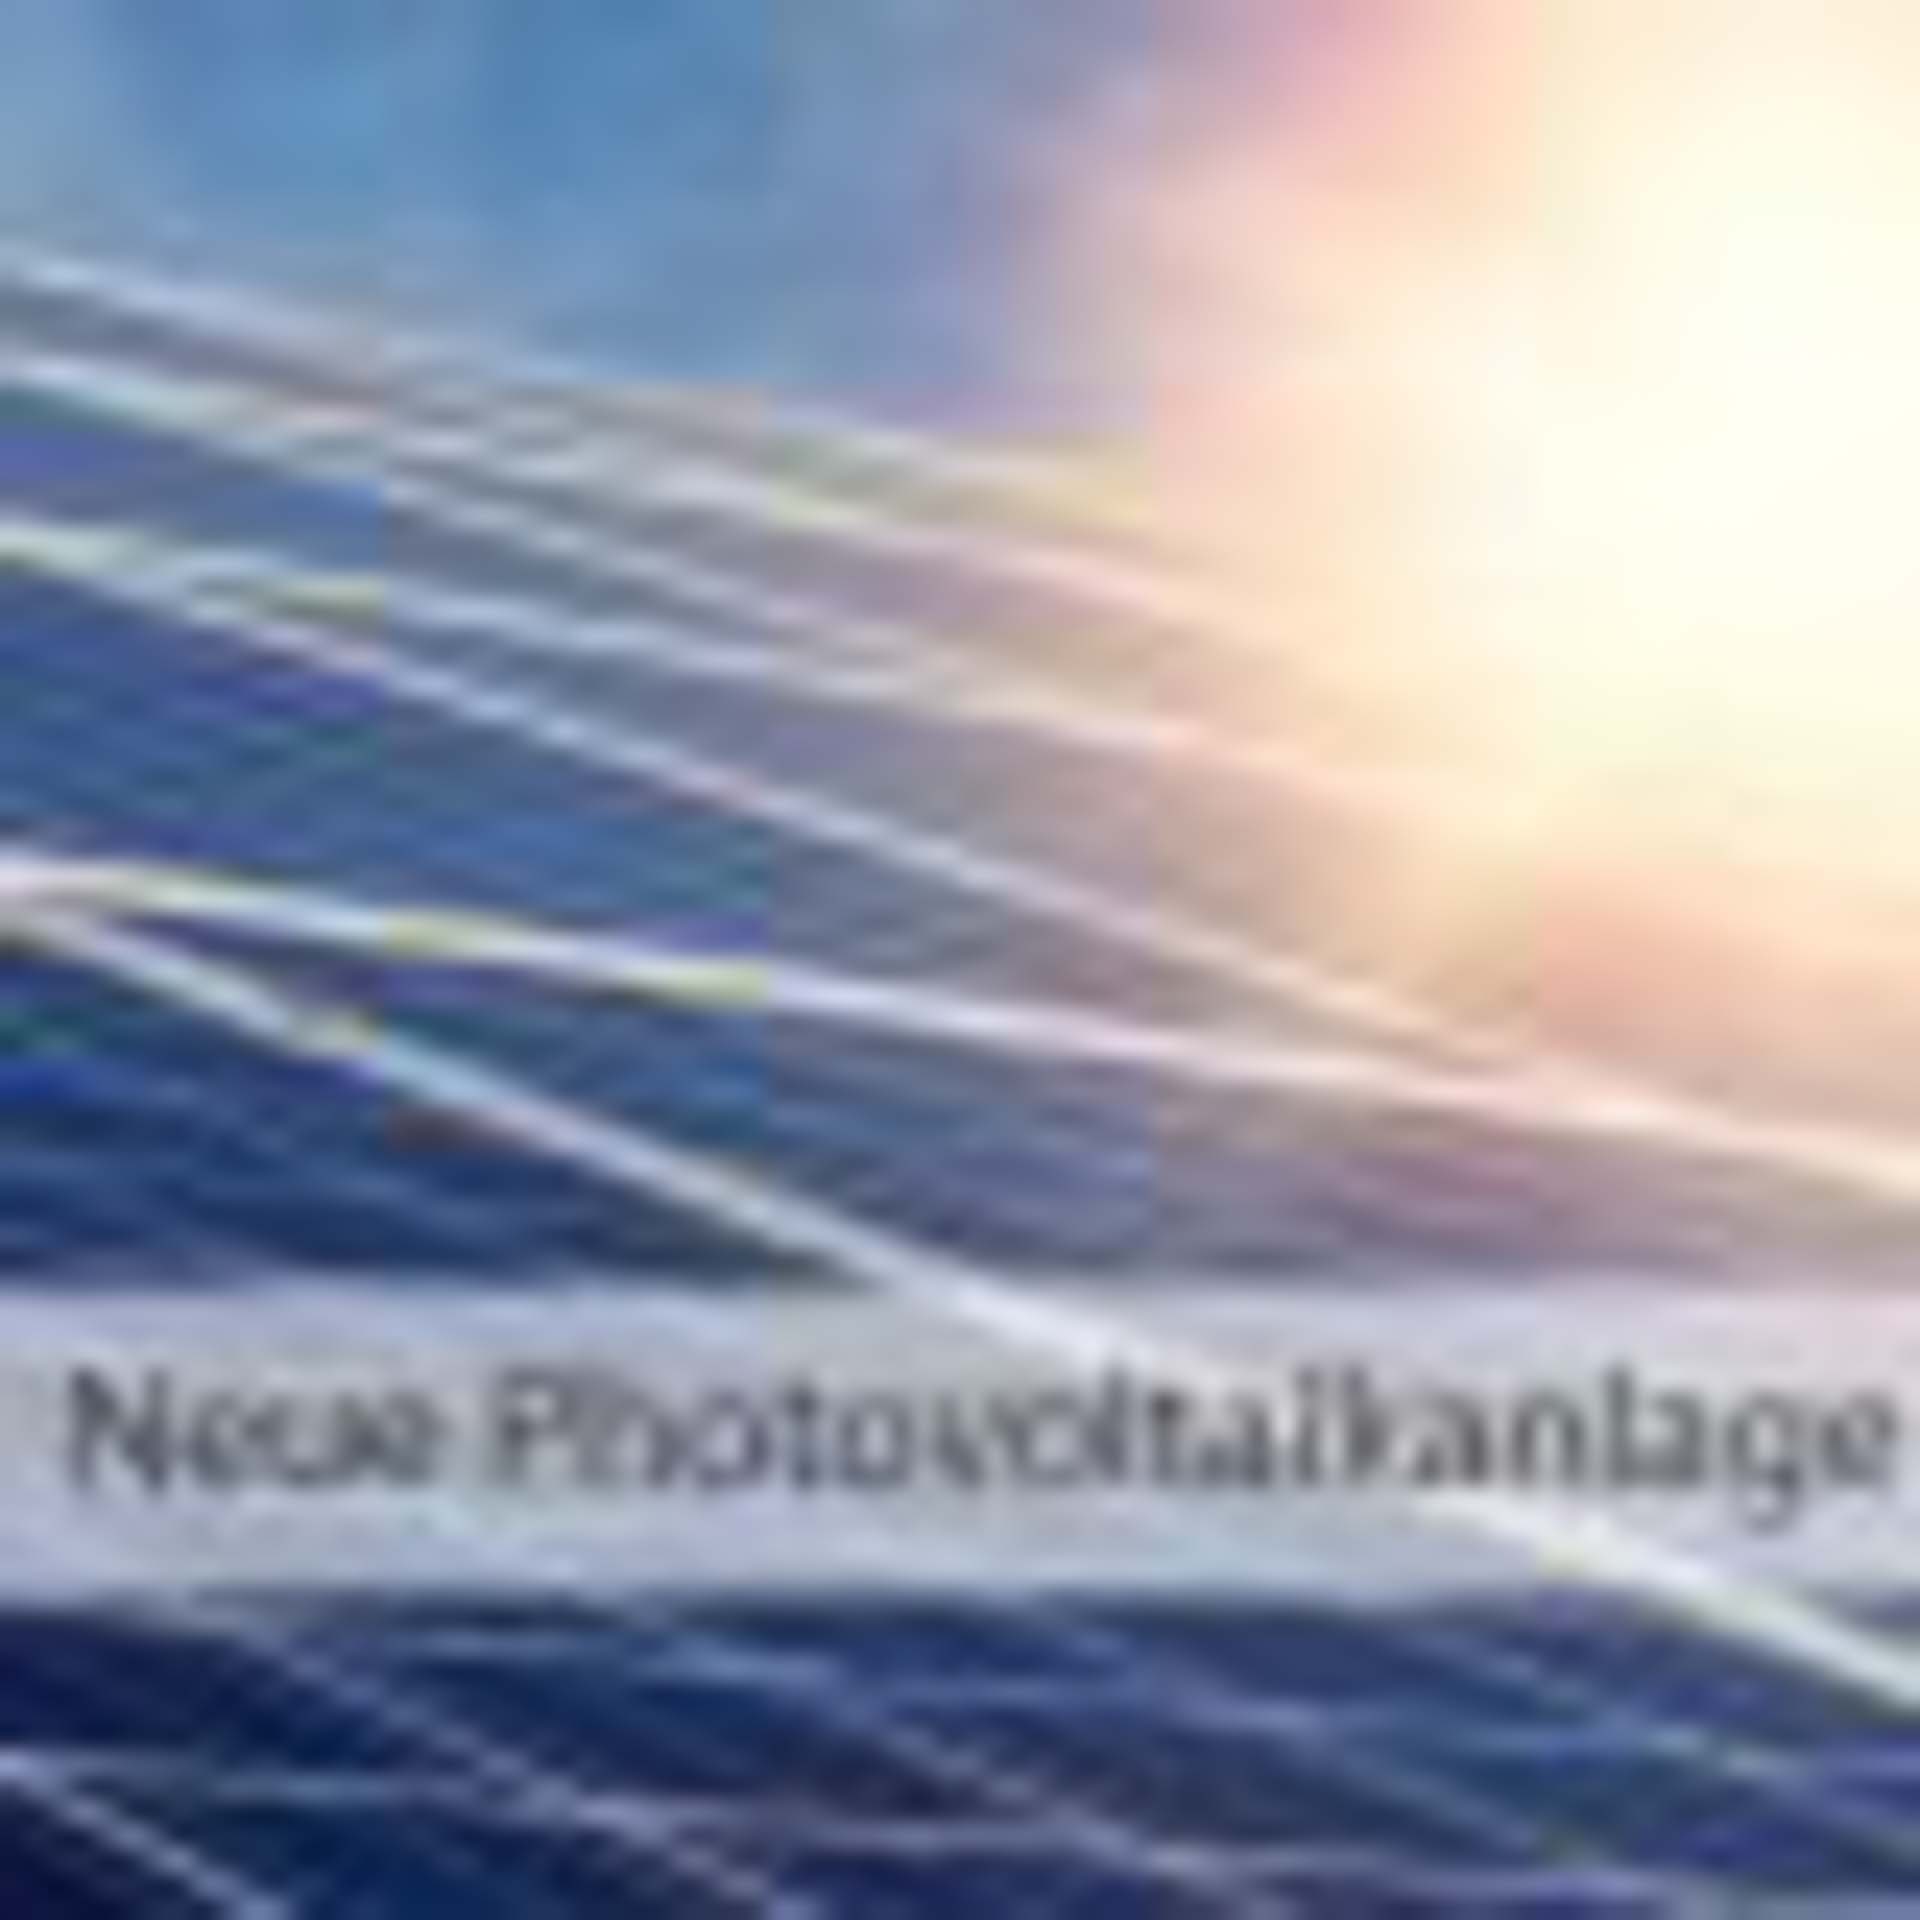 Neue Photovoltaikanlage | Papier-Schäfer GmbH & Co. KG